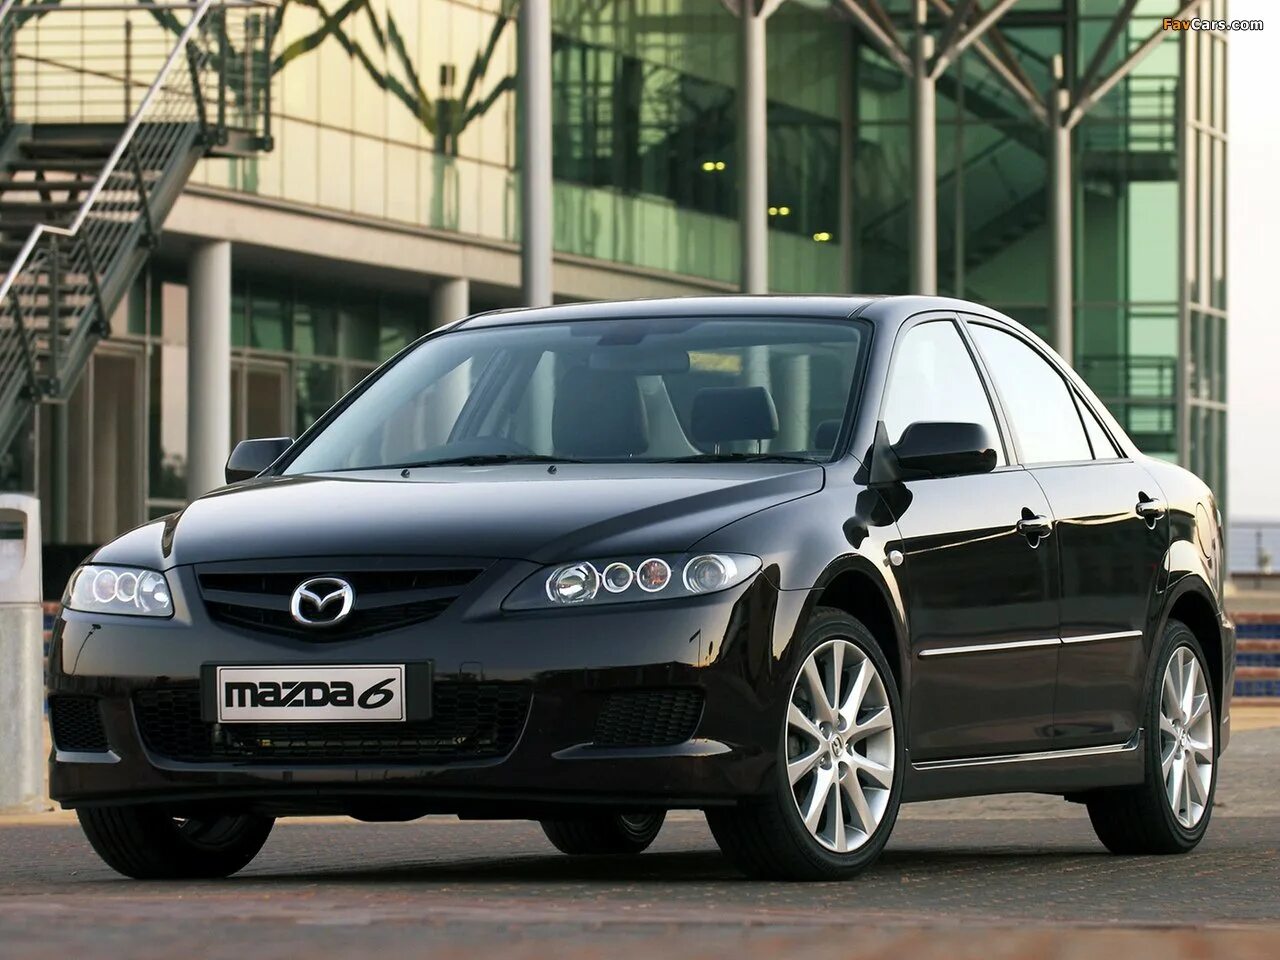 Мазда 6 1 gg. Mazda 6 gg. Mazda 6 gg 2005. Mazda 6 gg (2002-2007). Мазда 6 gg 1 поколение.